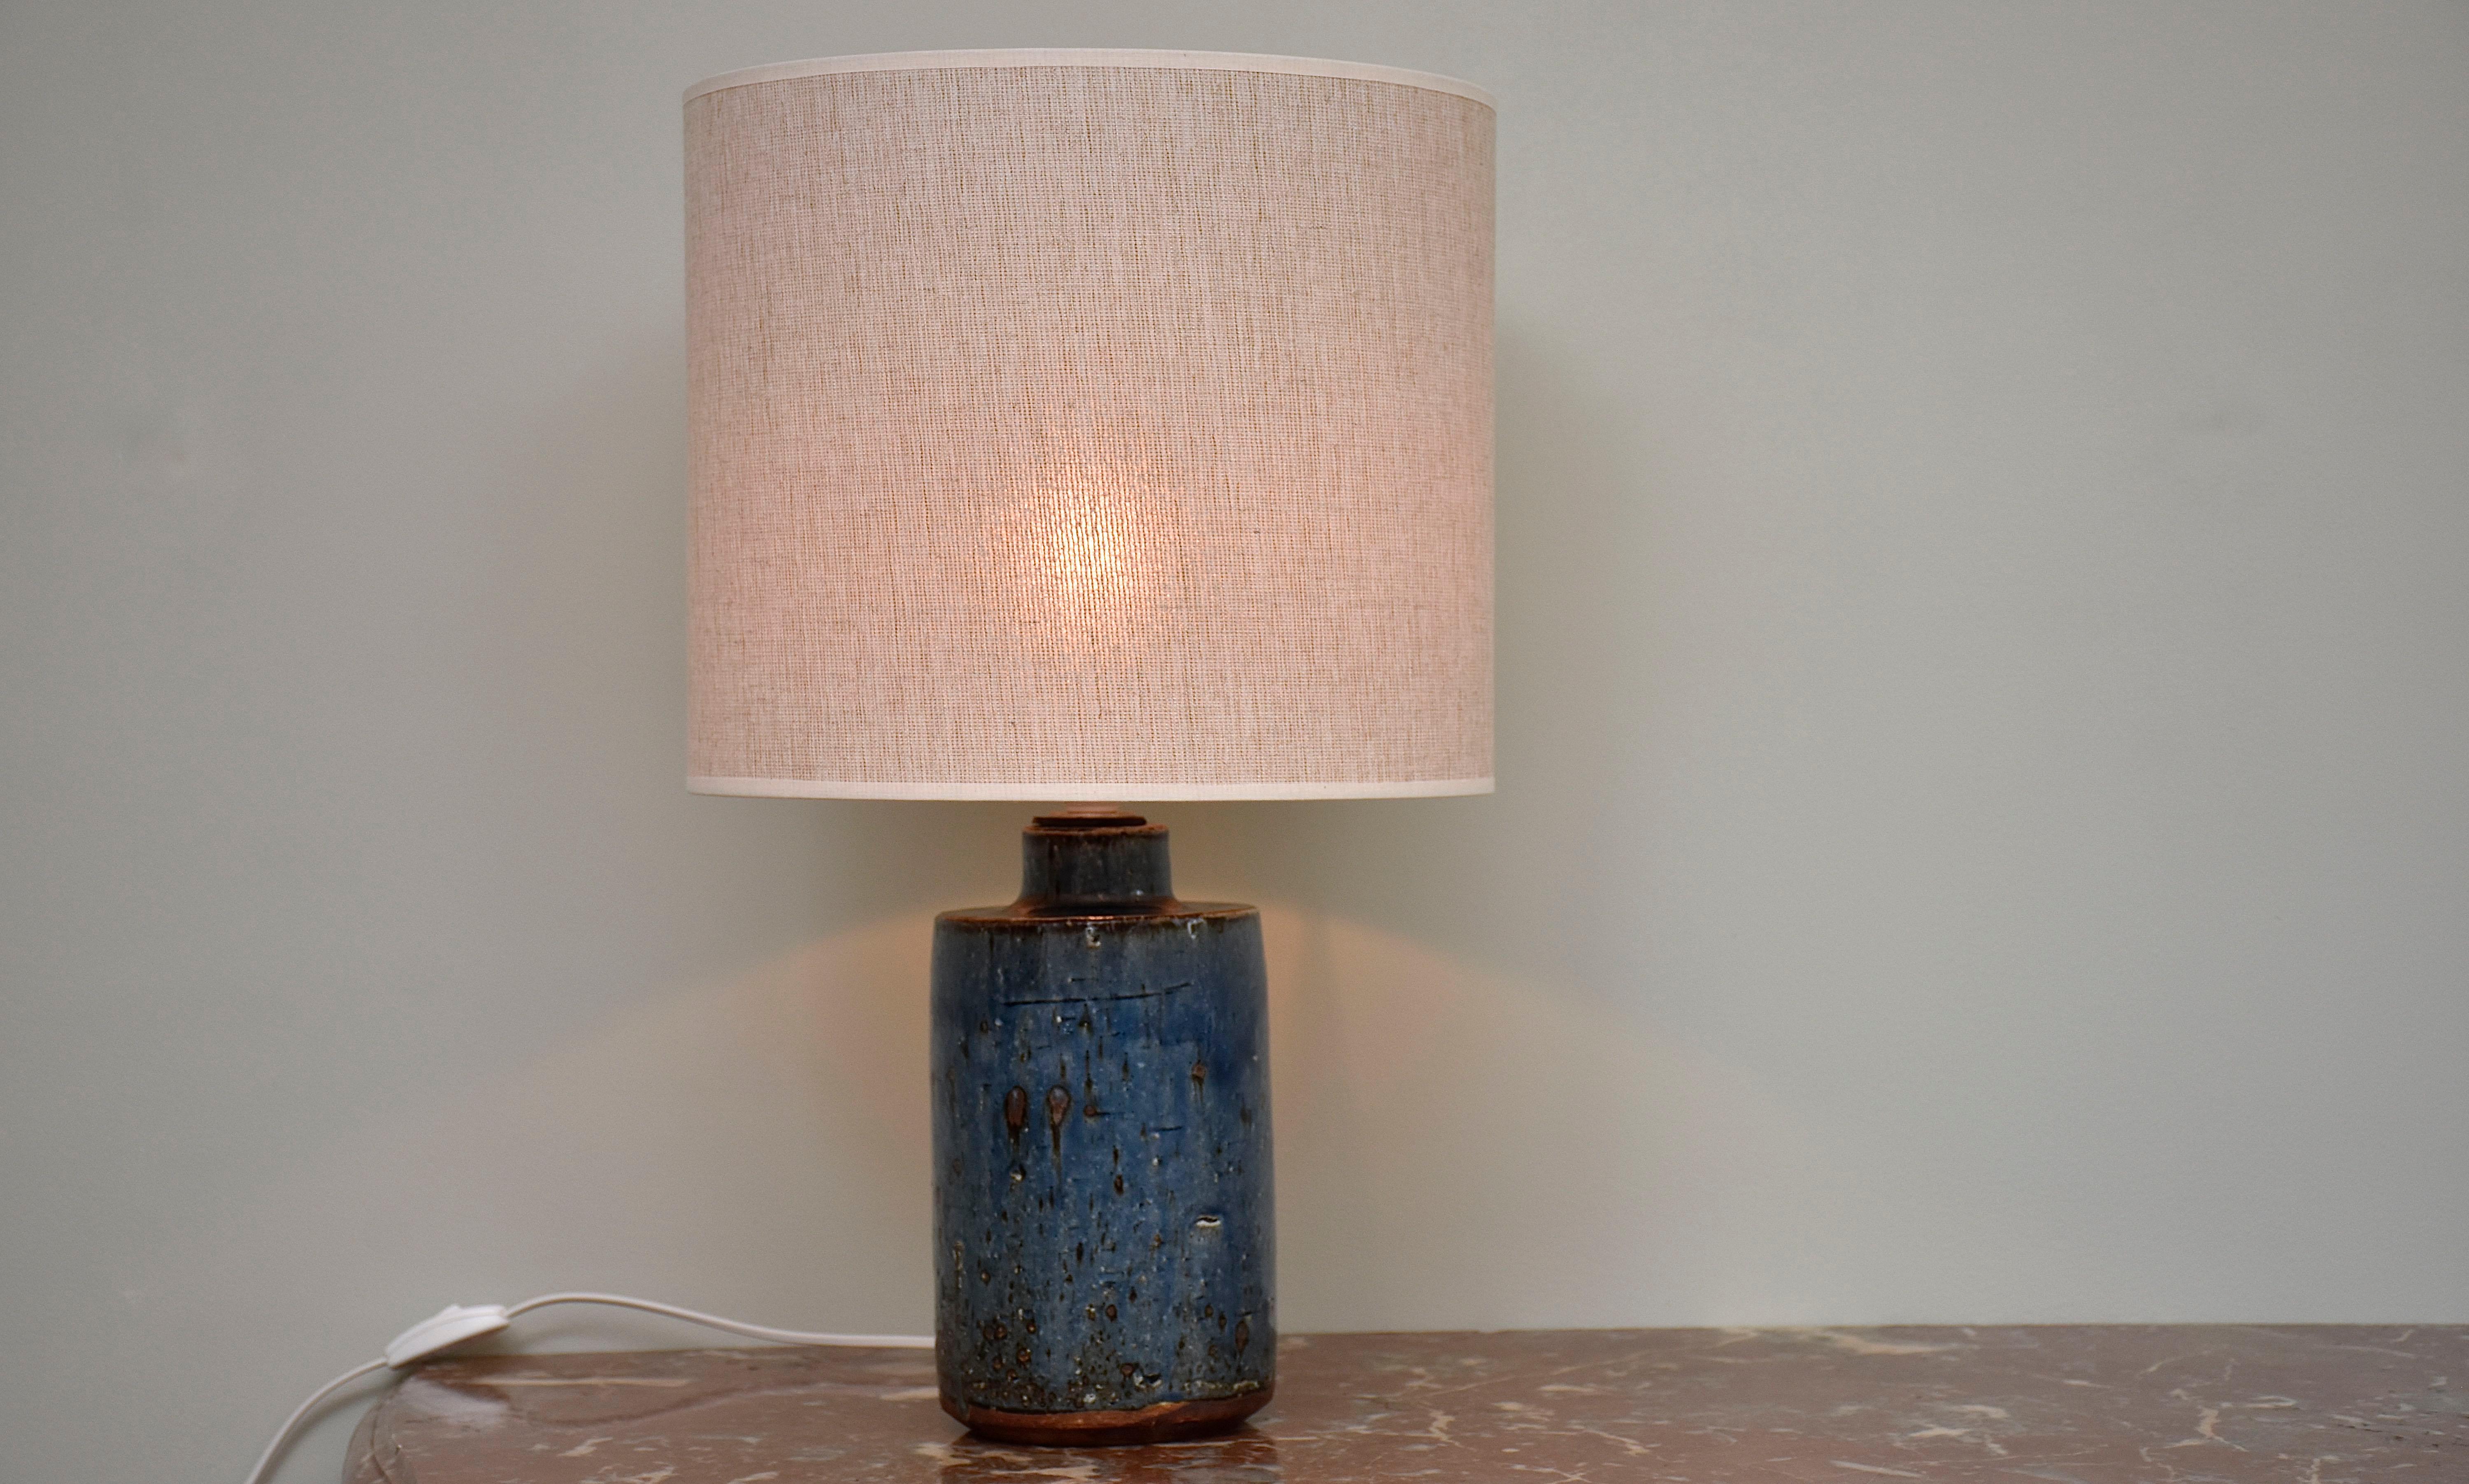 Eine wunderschöne blaue Tischlampe aus Steinzeug, entworfen und handgefertigt von Marianne Westmann, schwedische Designerin und Keramikerin.
Die Lampe wurde für die berühmte Keramikfabrik Rorstrand in Schweden hergestellt.
Mit 1x Licht.
Unten